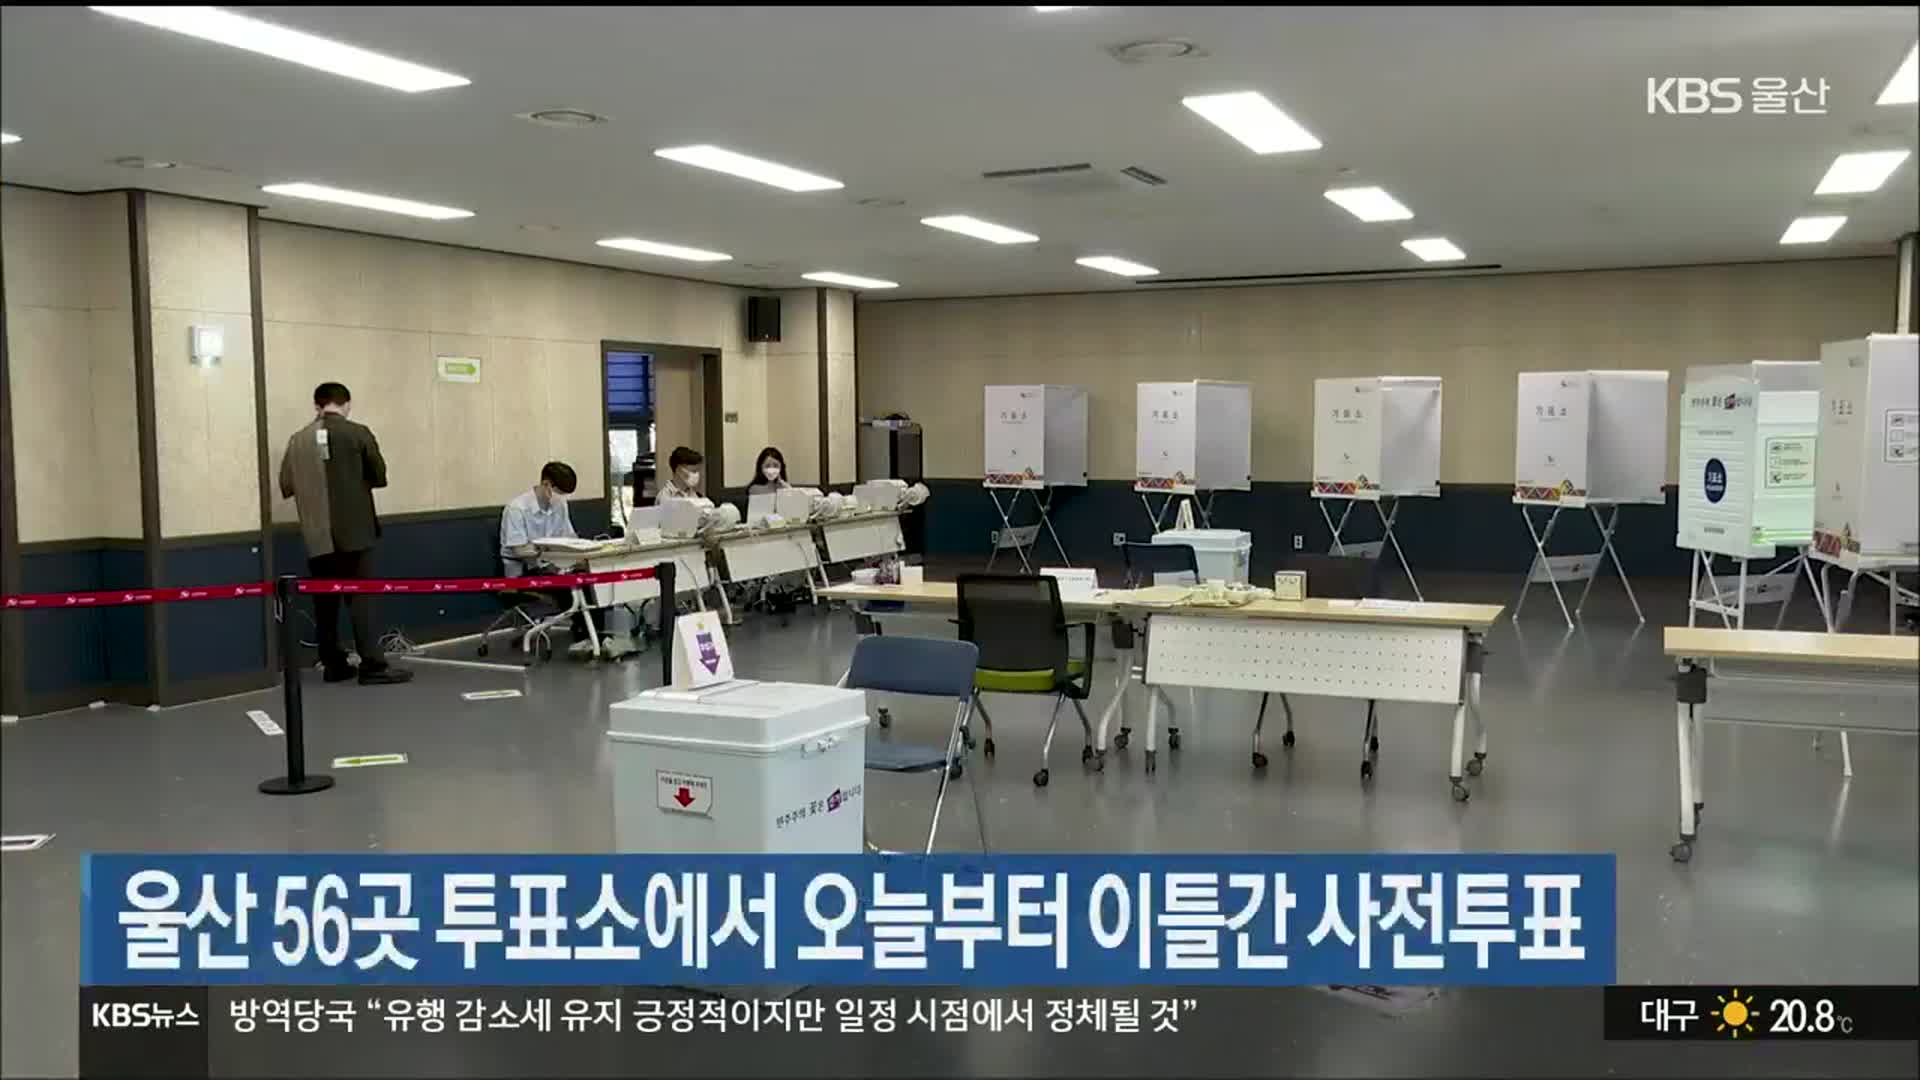 울산 56곳 투표소에서 오늘부터 이틀간 사전투표